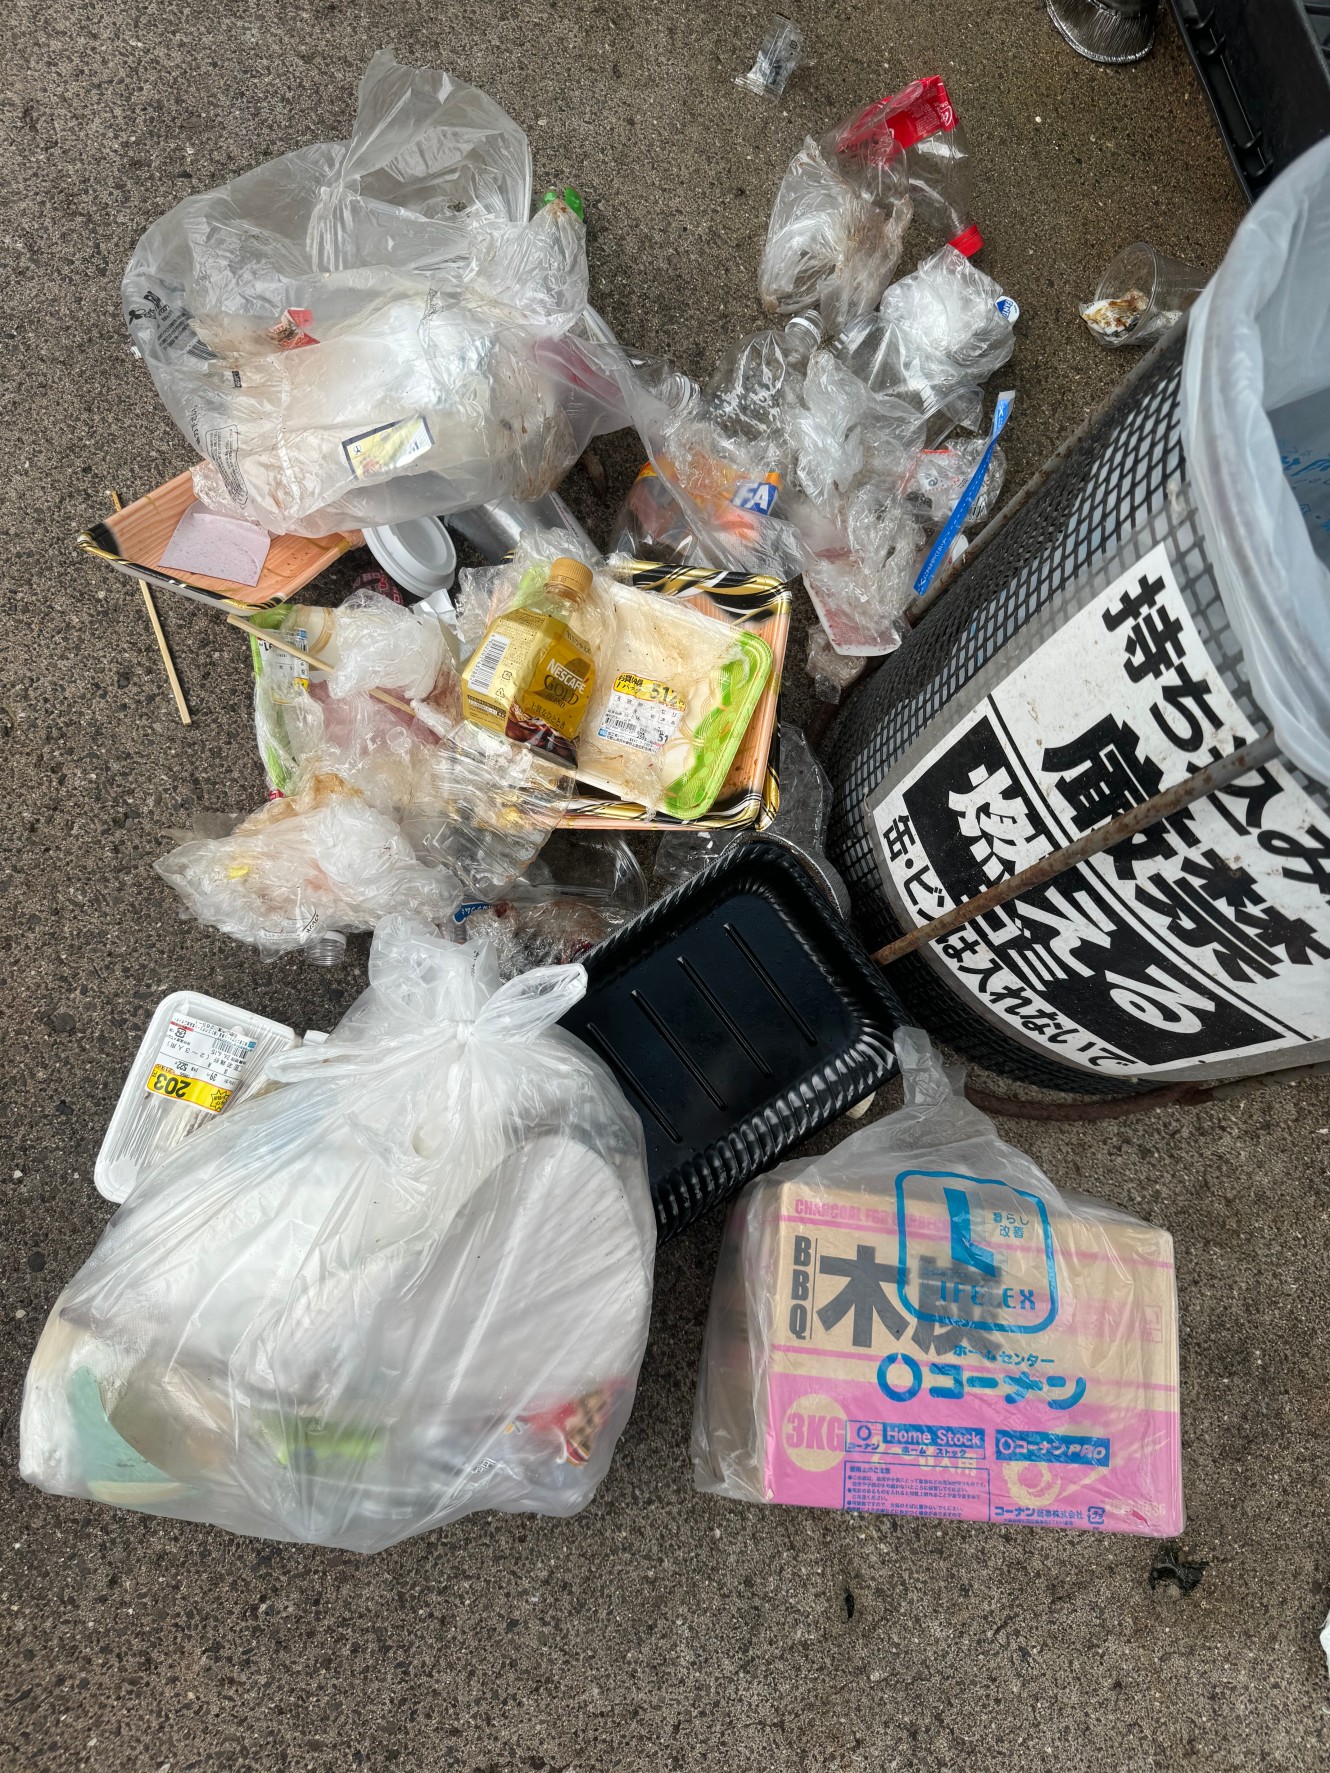 BQ関連ゴミは捨てないでください。明確な不法投棄です。警察に届け出します。釣太郎